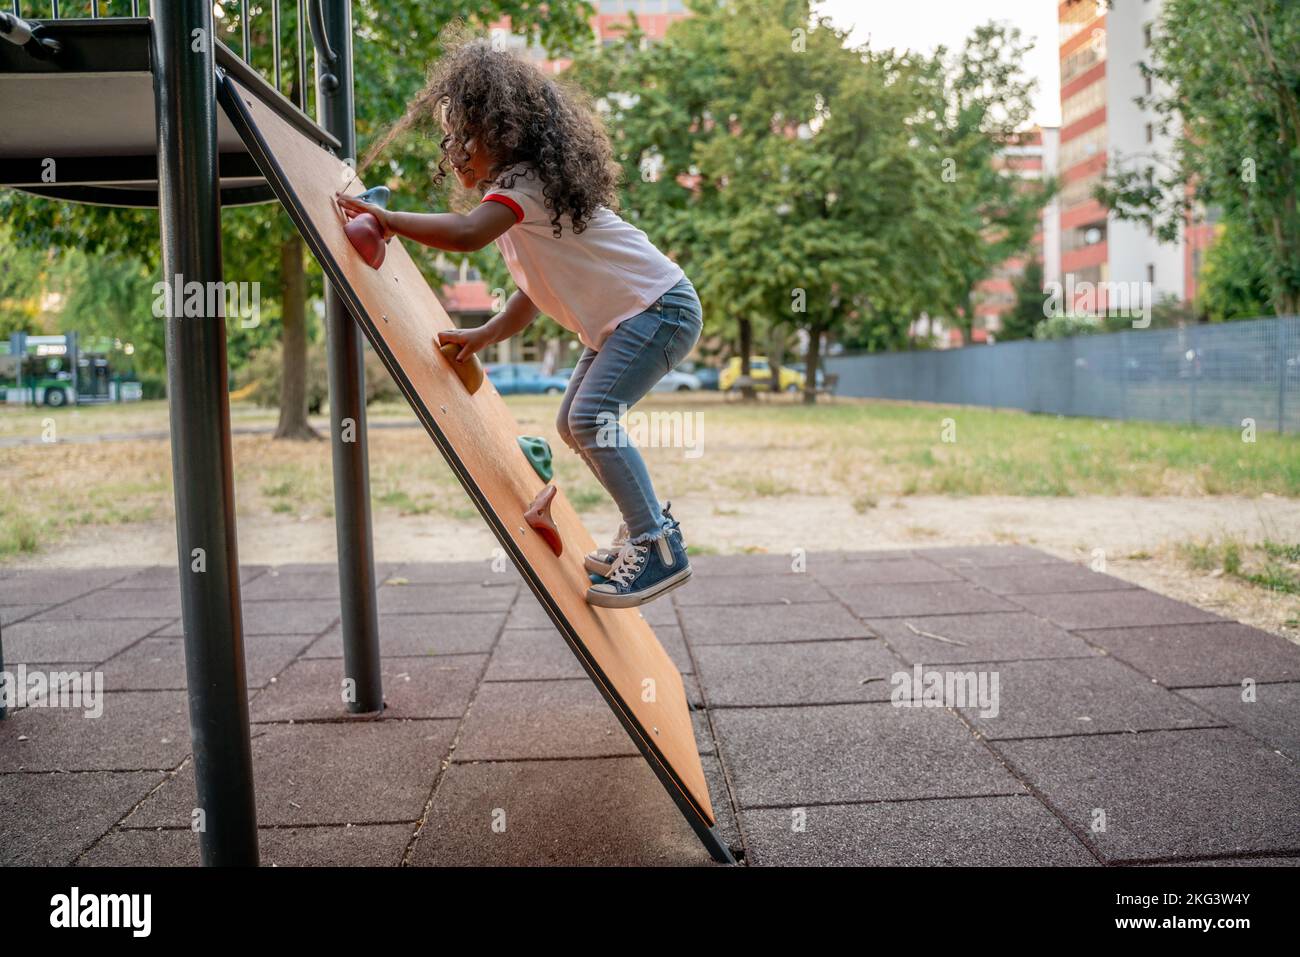 Enfant sportif s'engageant dans une activité de plein air Banque D'Images